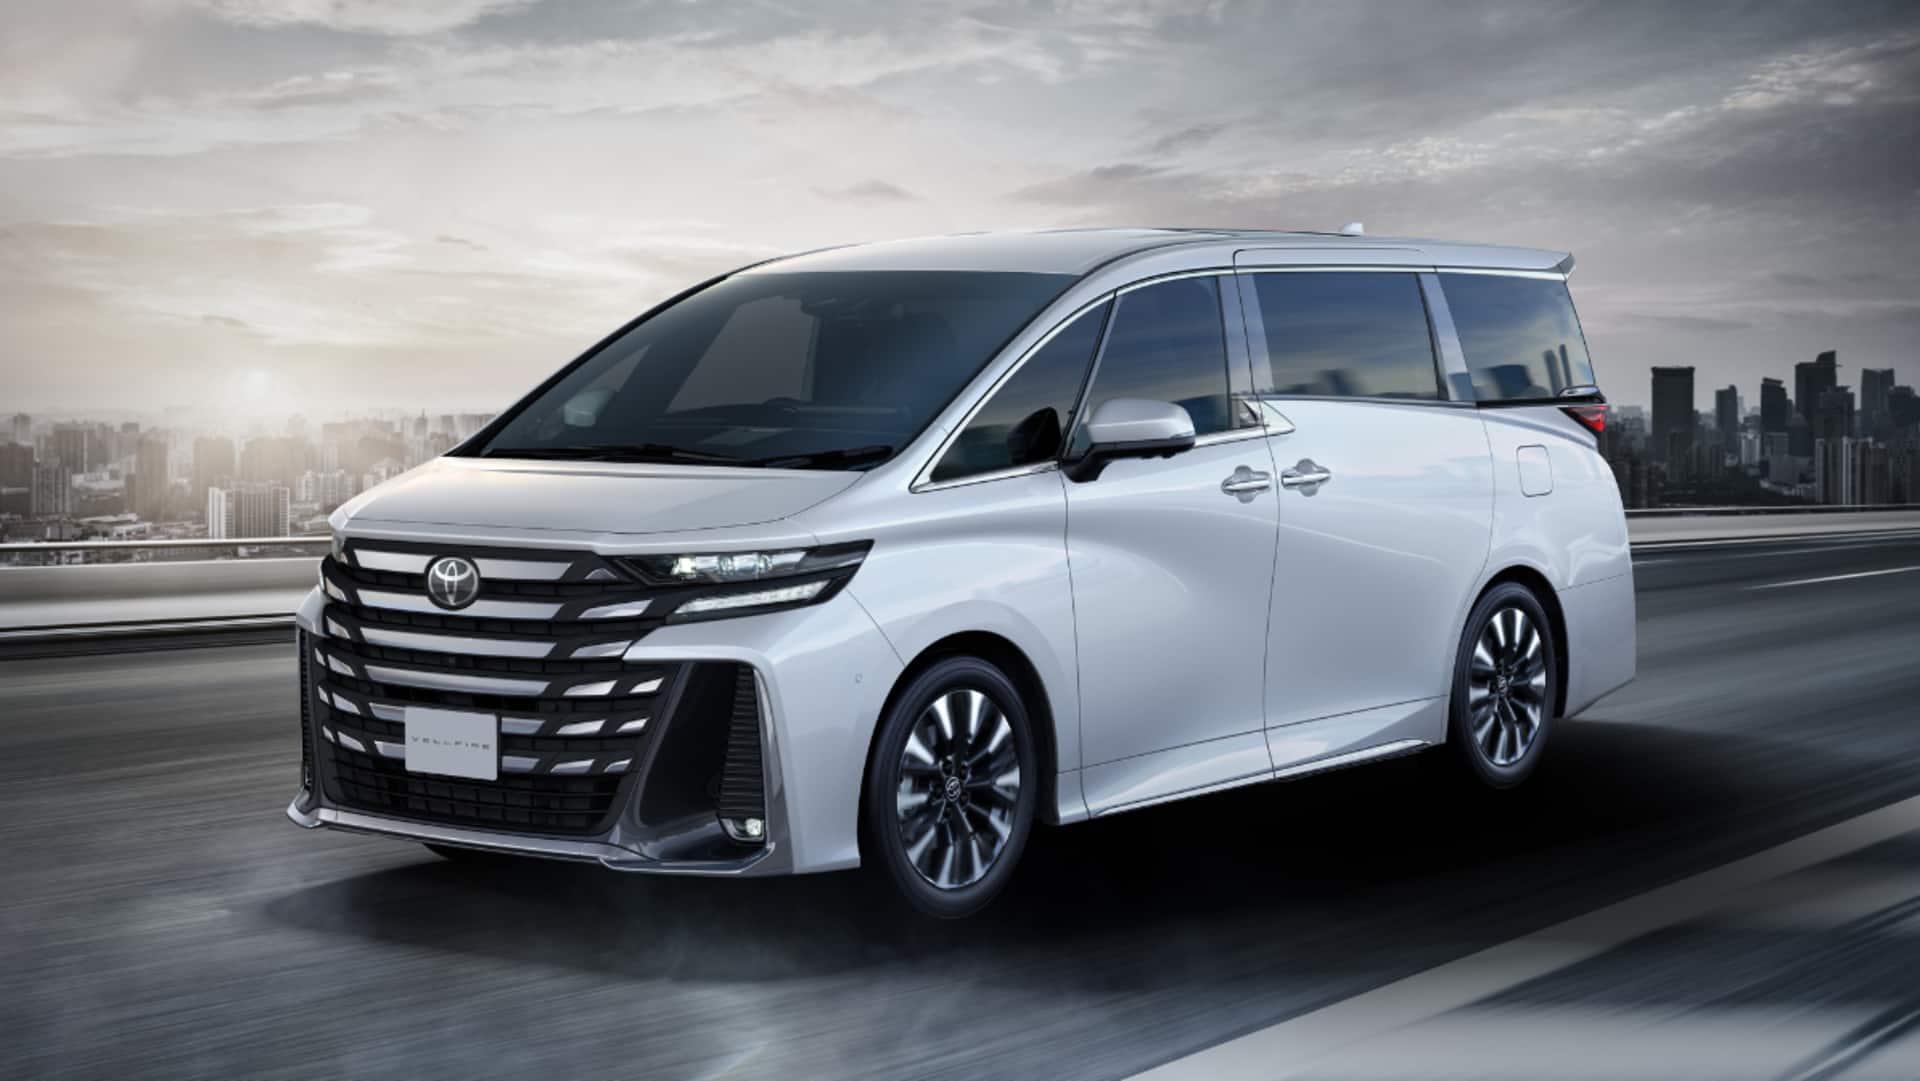 2024 Toyota Vellfire minivan v/s 2023 model: Check upgrades